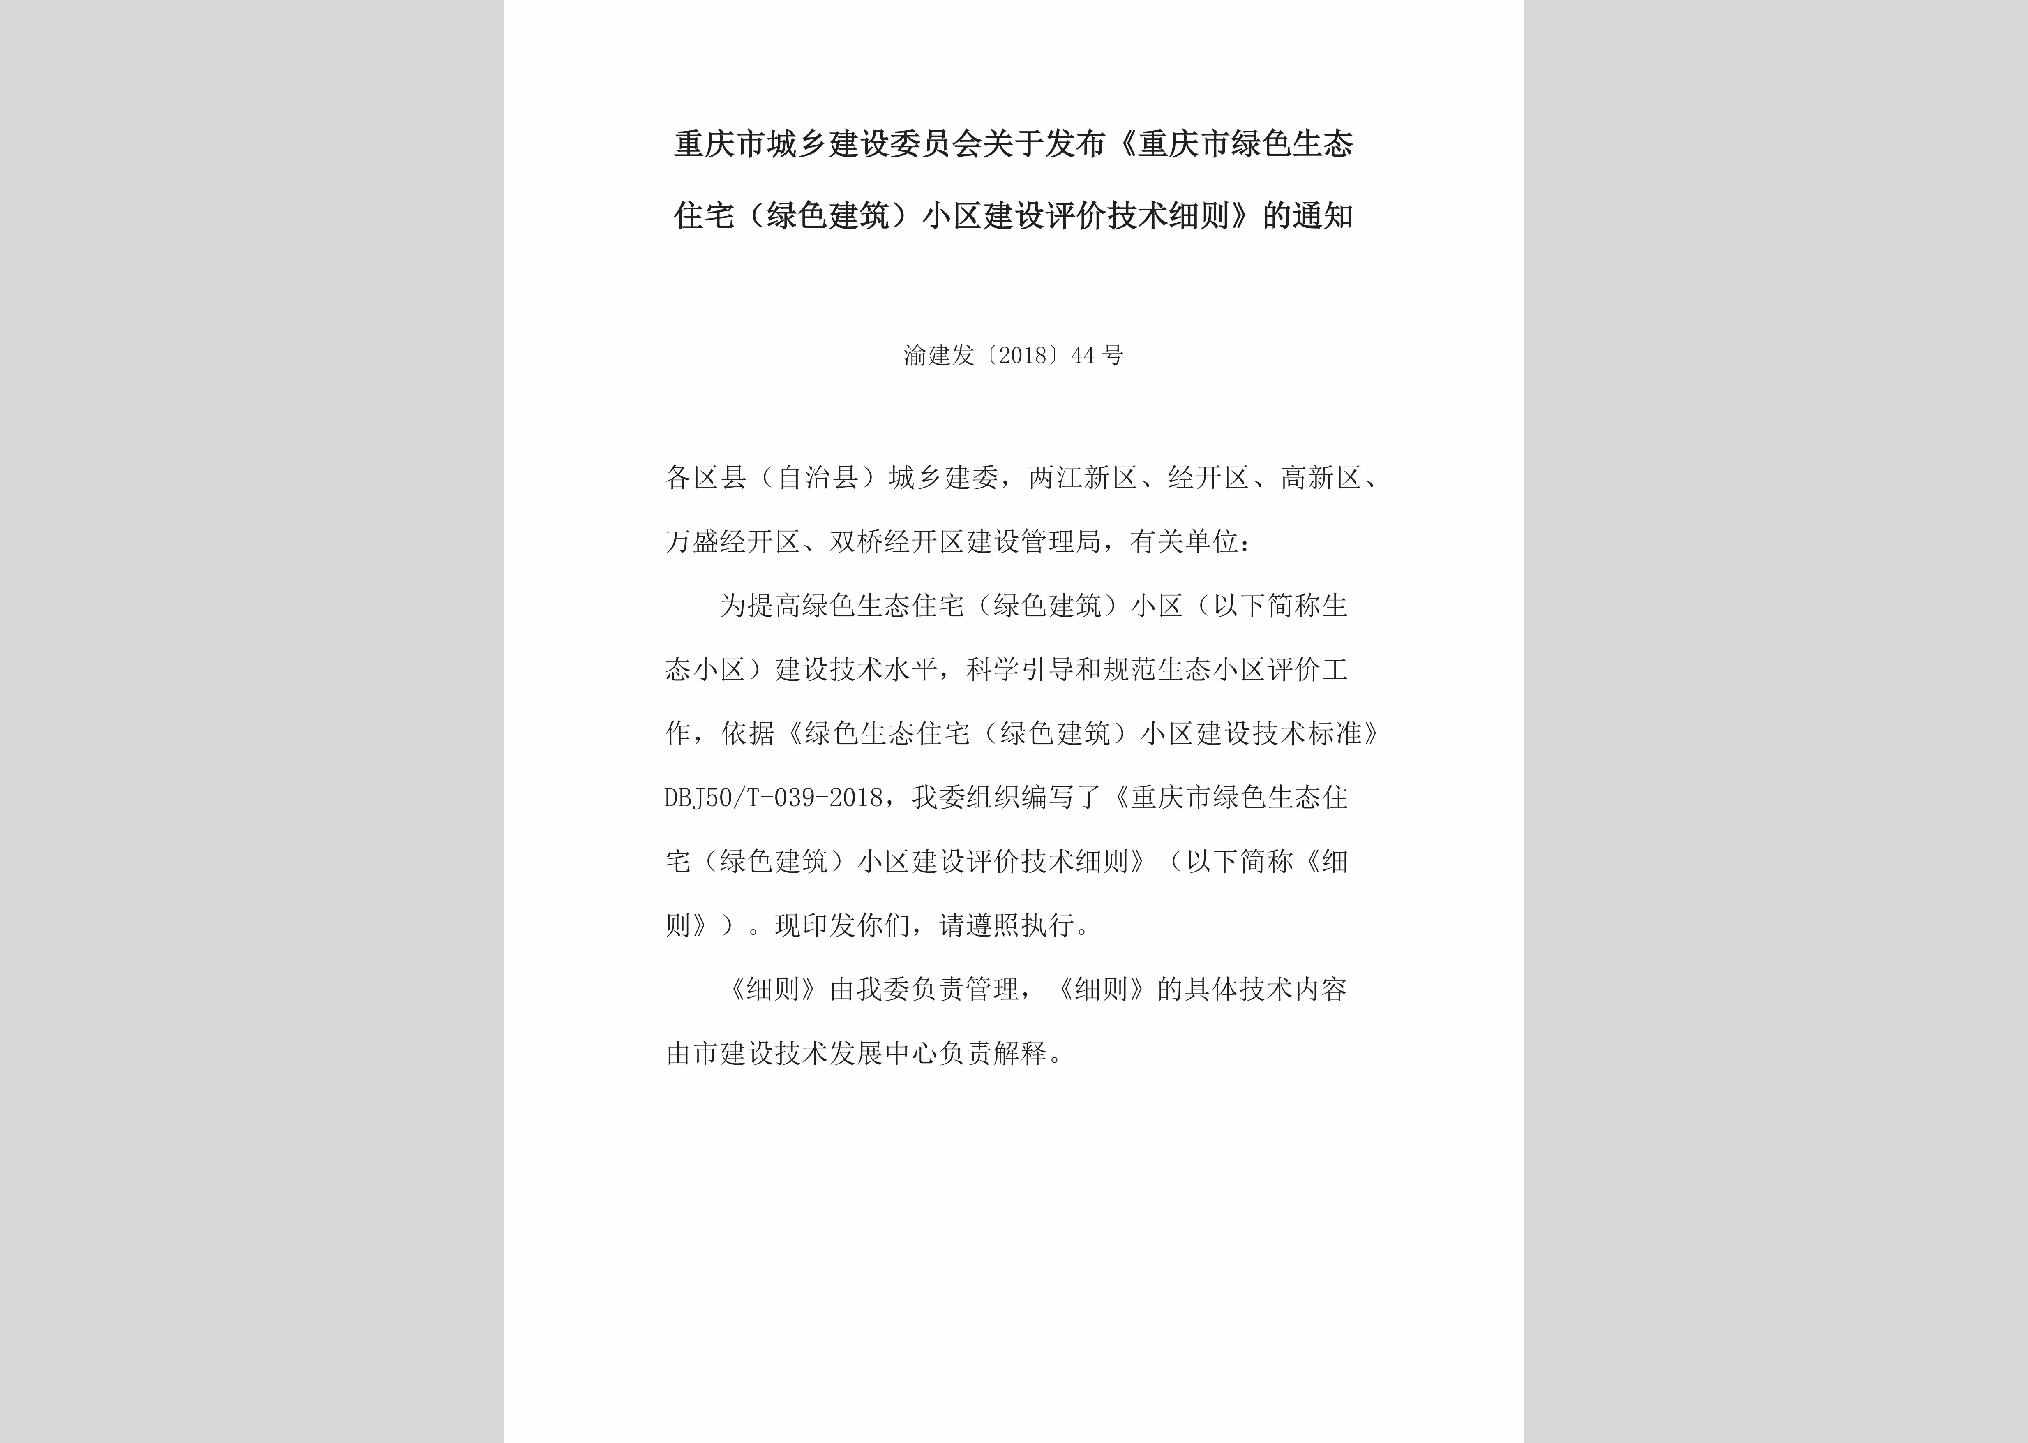 渝建发[2018]44号：关于发布《重庆市绿色生态住宅（绿色建筑）小区建设评价技术细则》的通知